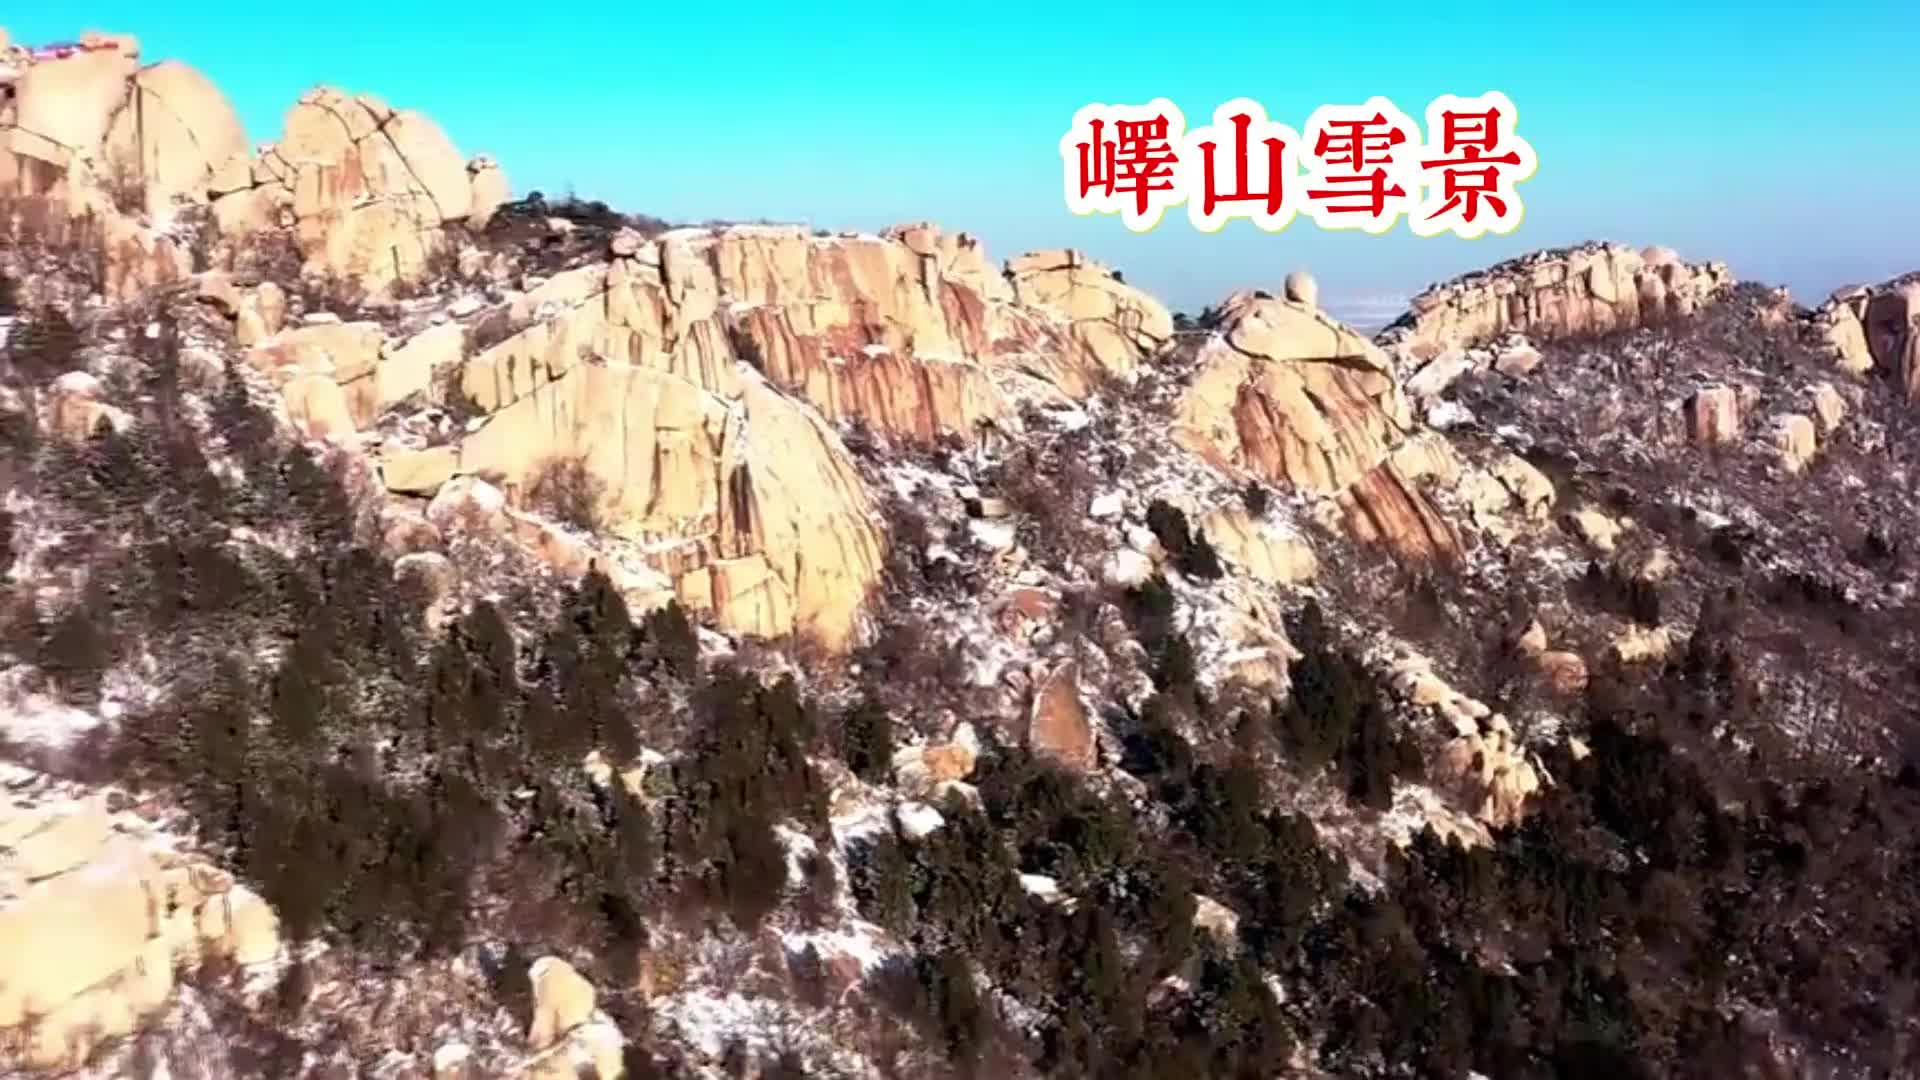 更济宁丨峄山雪景